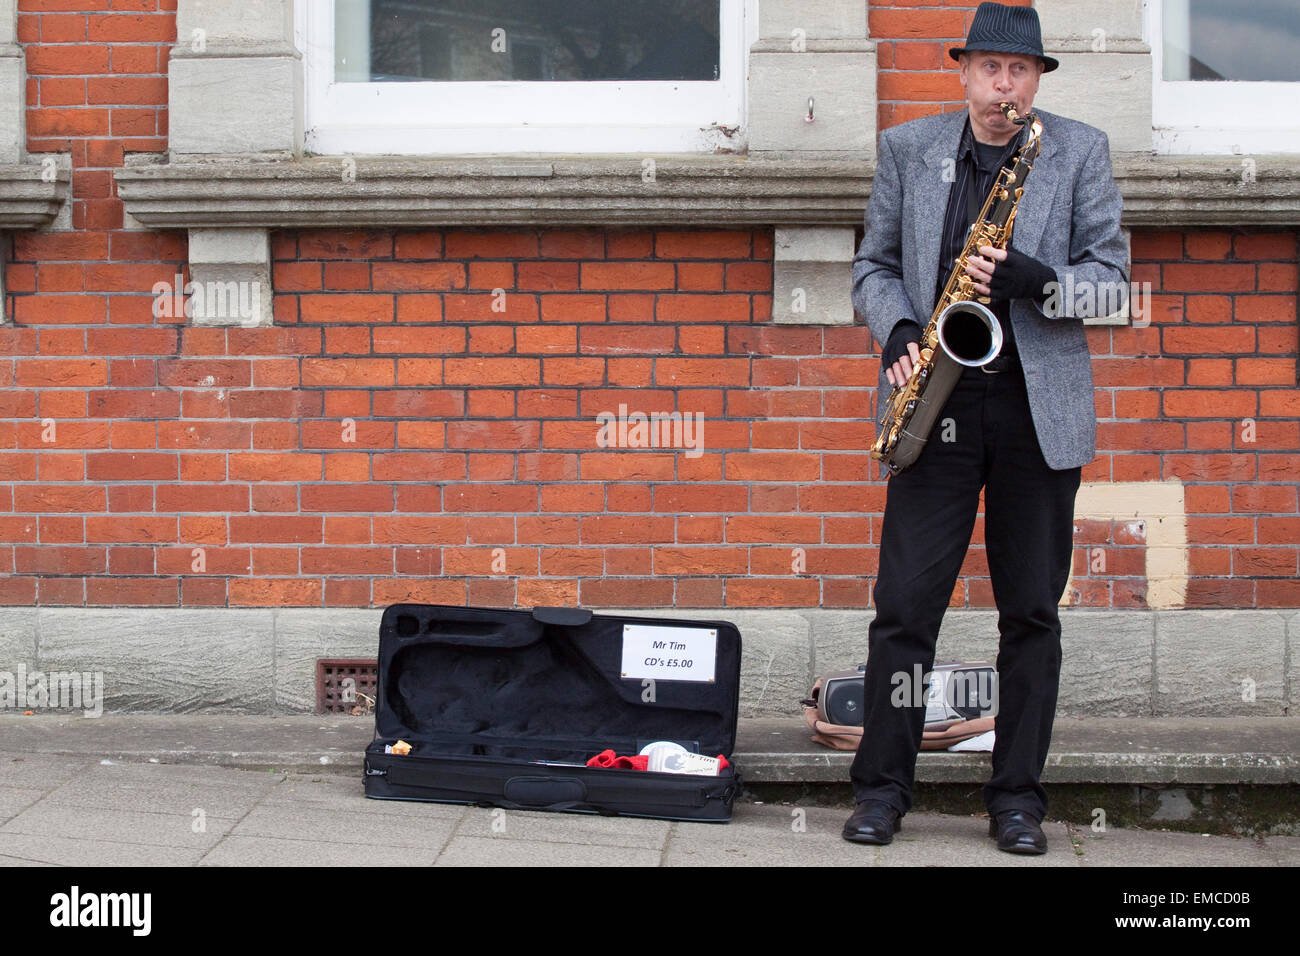 Un musicien ambulant de rue jouant un saxophone ténor Banque D'Images